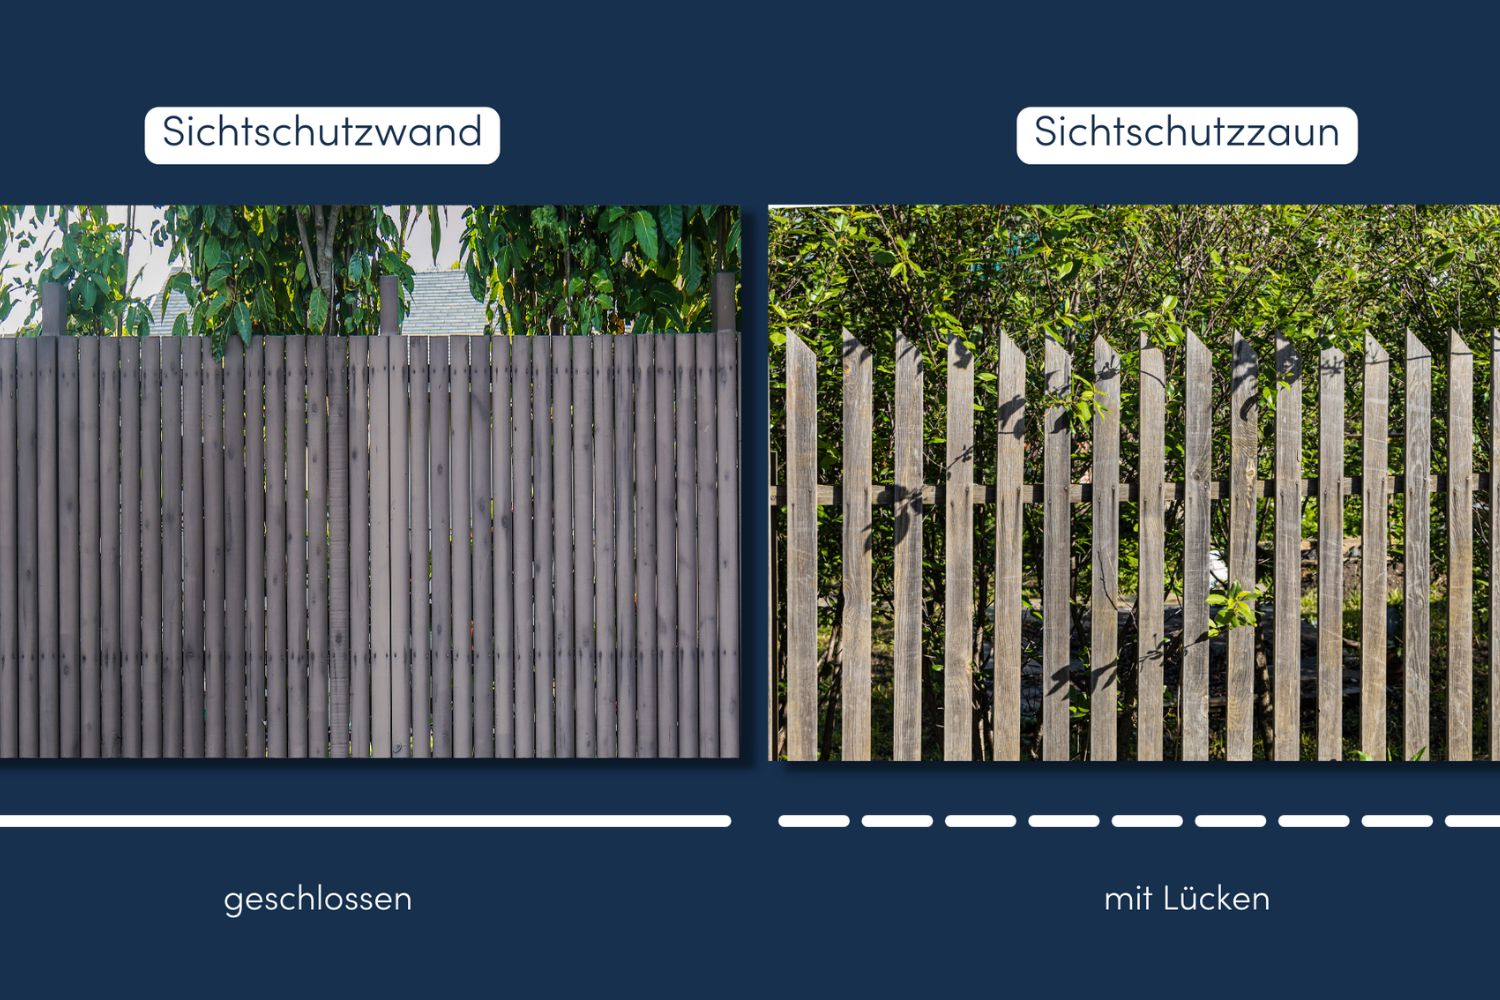 Vergleich Sichtschutzwand und Zaun